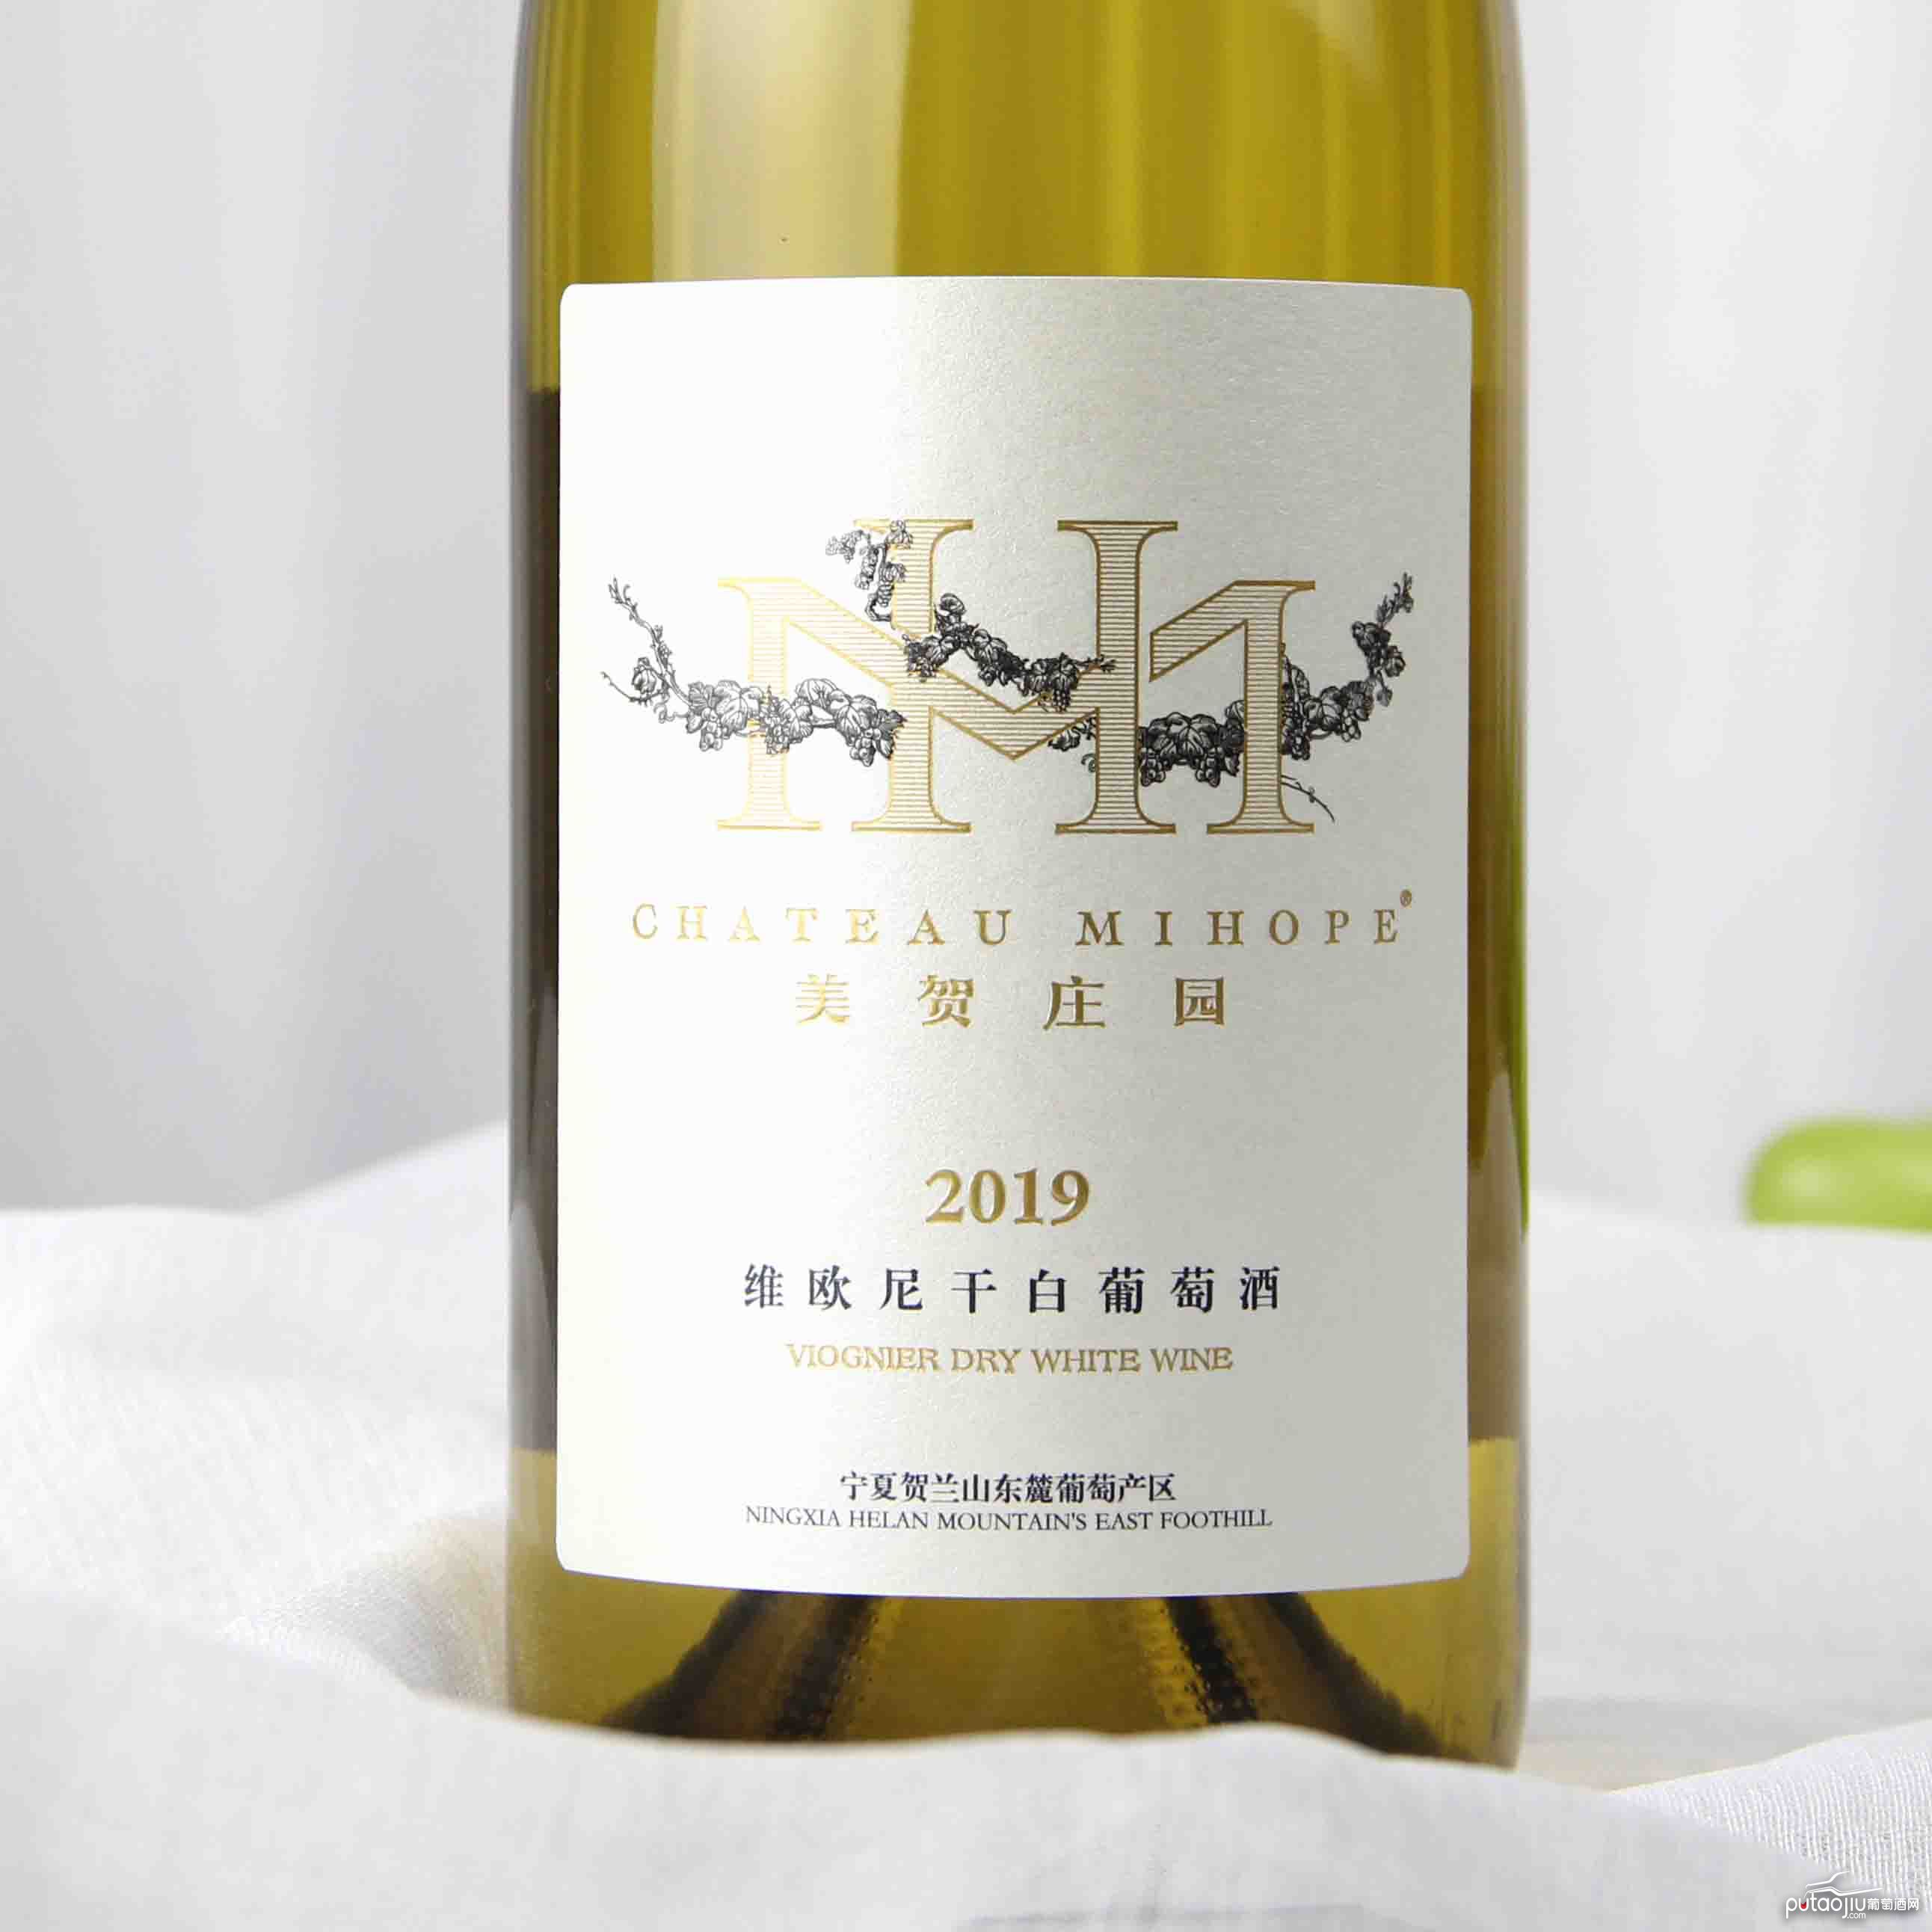 中国宁夏区美贺庄园2019维欧尼干白葡萄酒